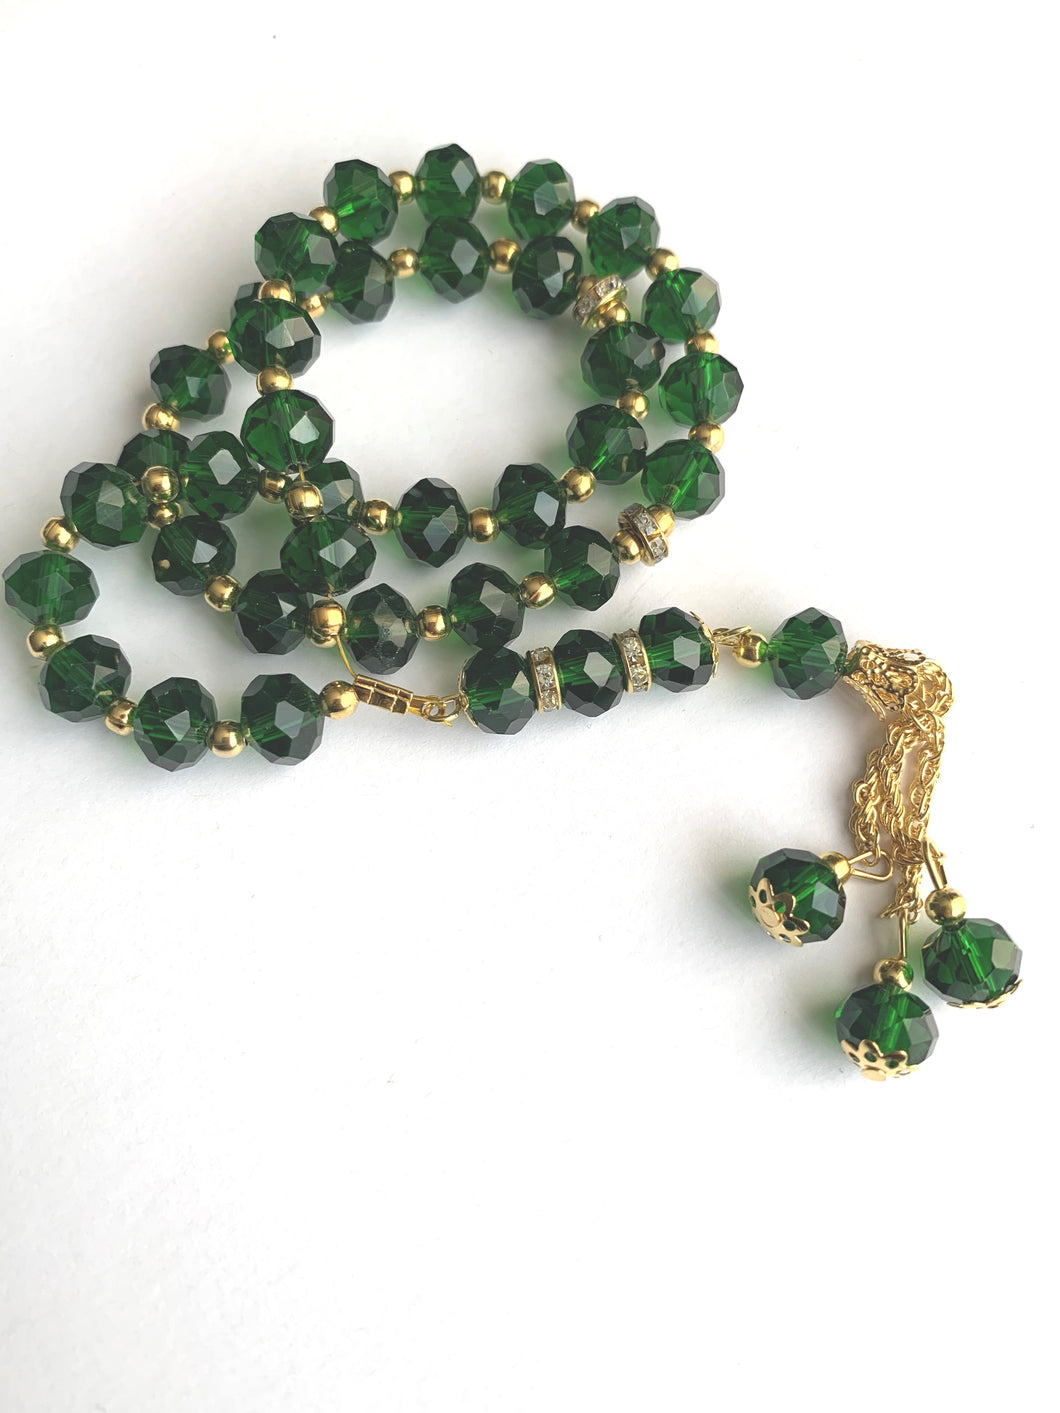 Prayer beads emerald green